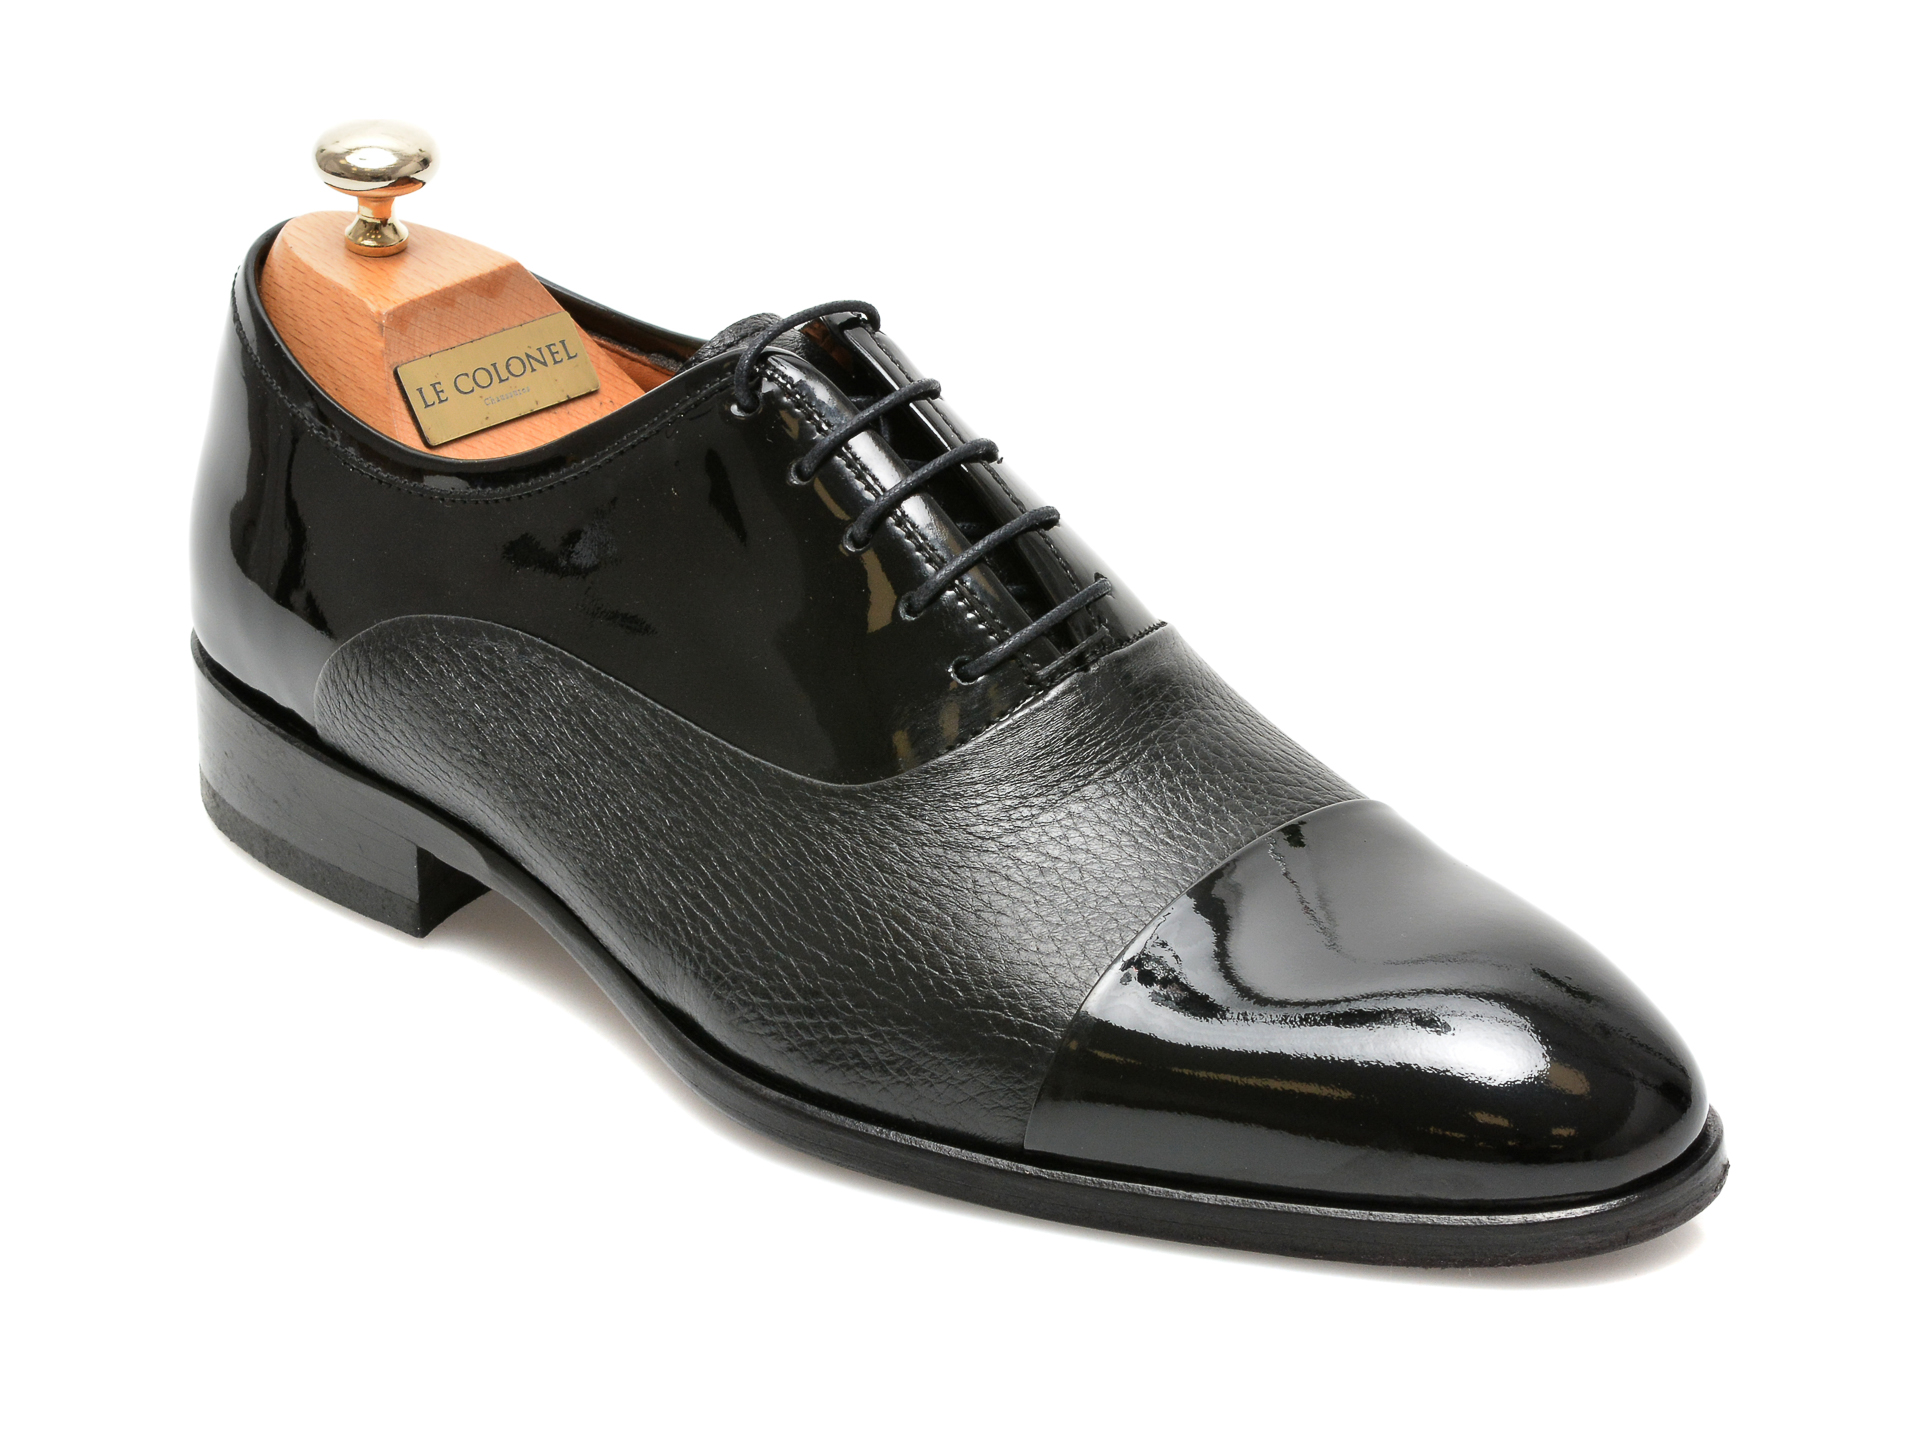 Pantofi LE COLONEL negri, 327117, din piele naturala lacuita Le Colonel